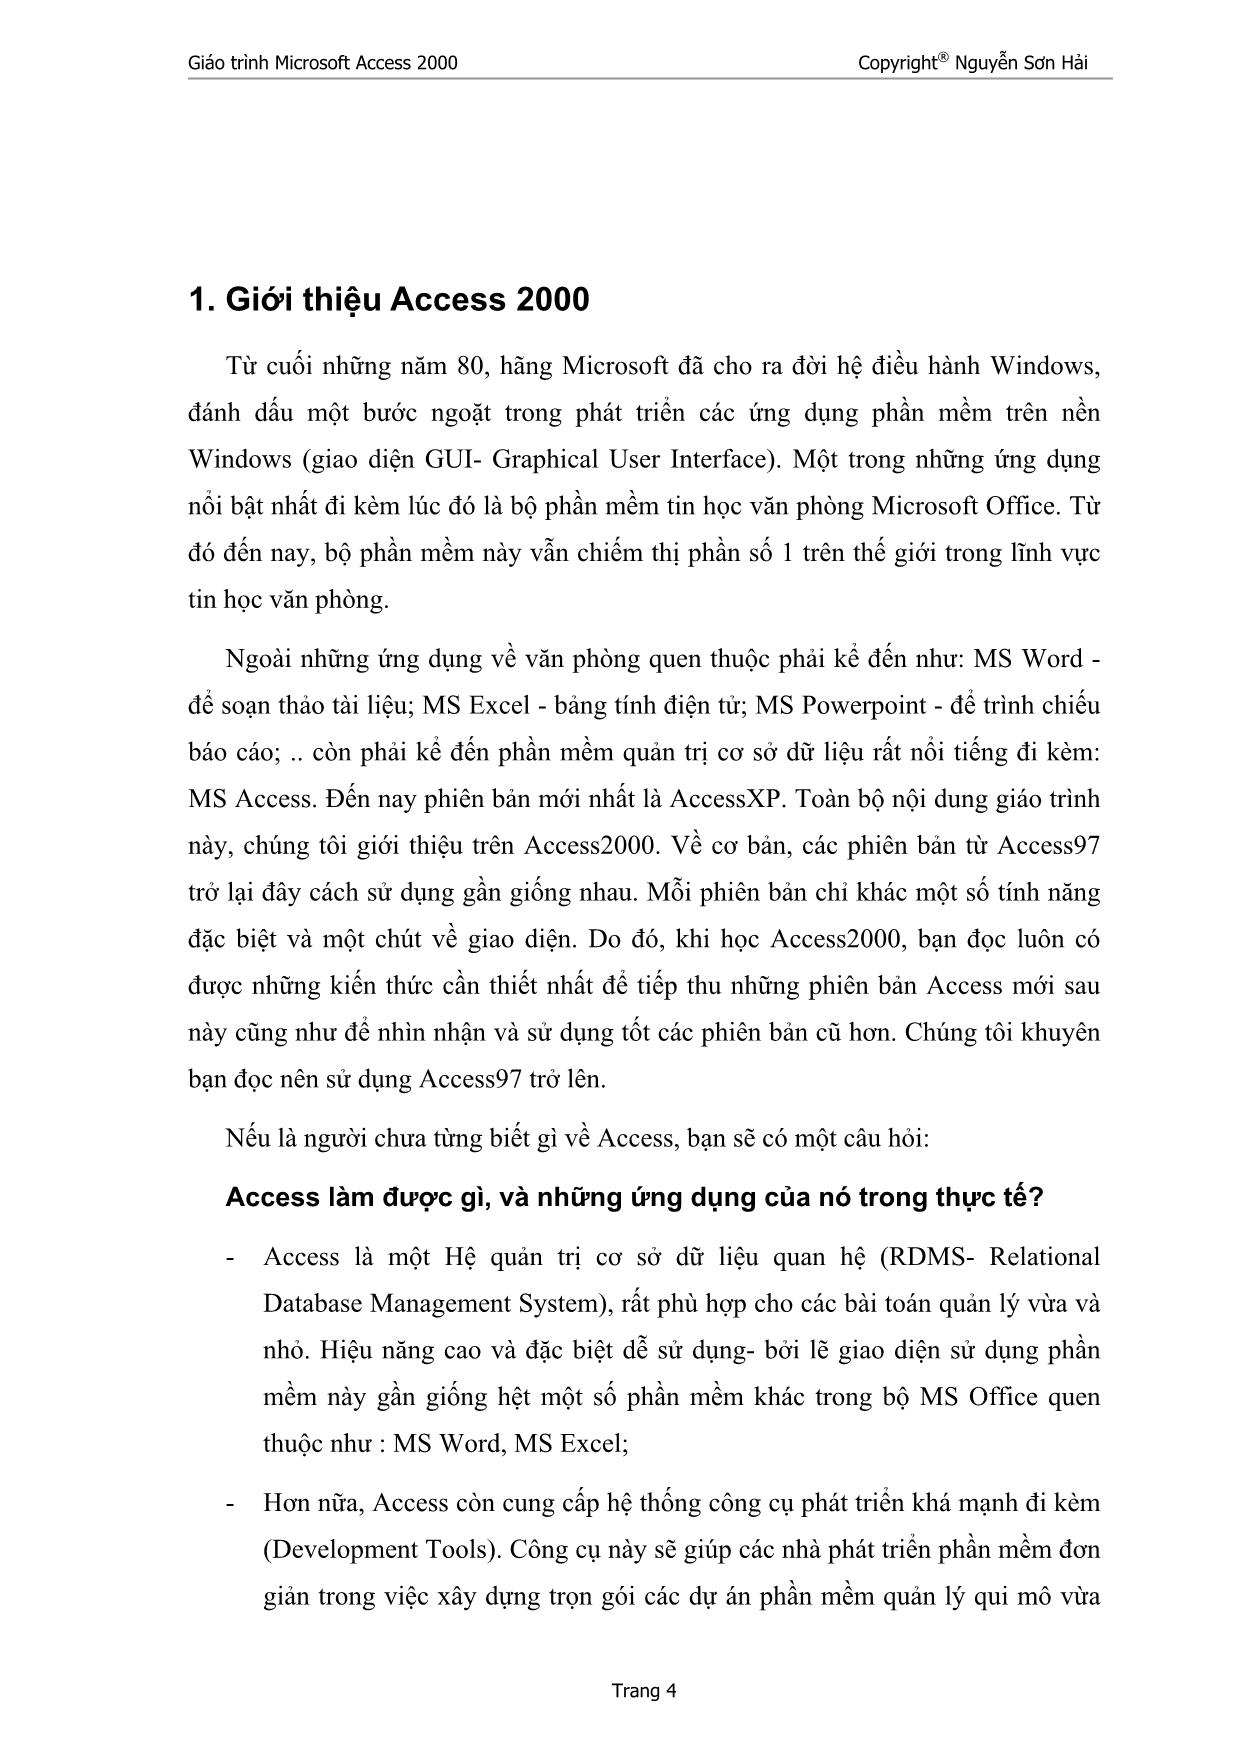 Giáo trình Microsoft Access 2000 trang 4